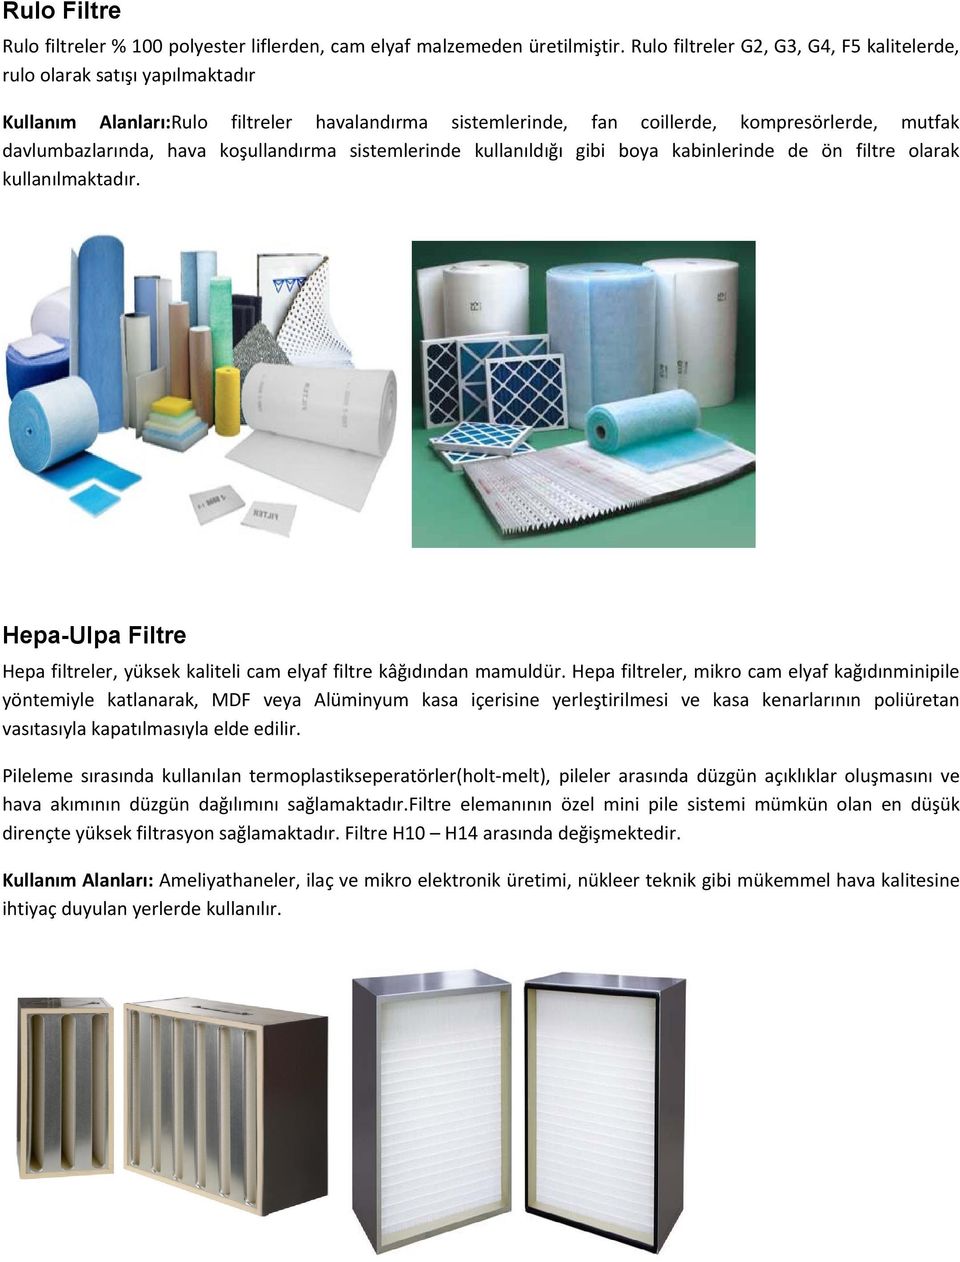 koşullandırma sistemlerinde kullanıldığı gibi boya kabinlerinde de ön filtre olarak kullanılmaktadır. Hepa-Ulpa Filtre Hepa filtreler, yüksek kaliteli cam elyaf filtre kâğıdından mamuldür.